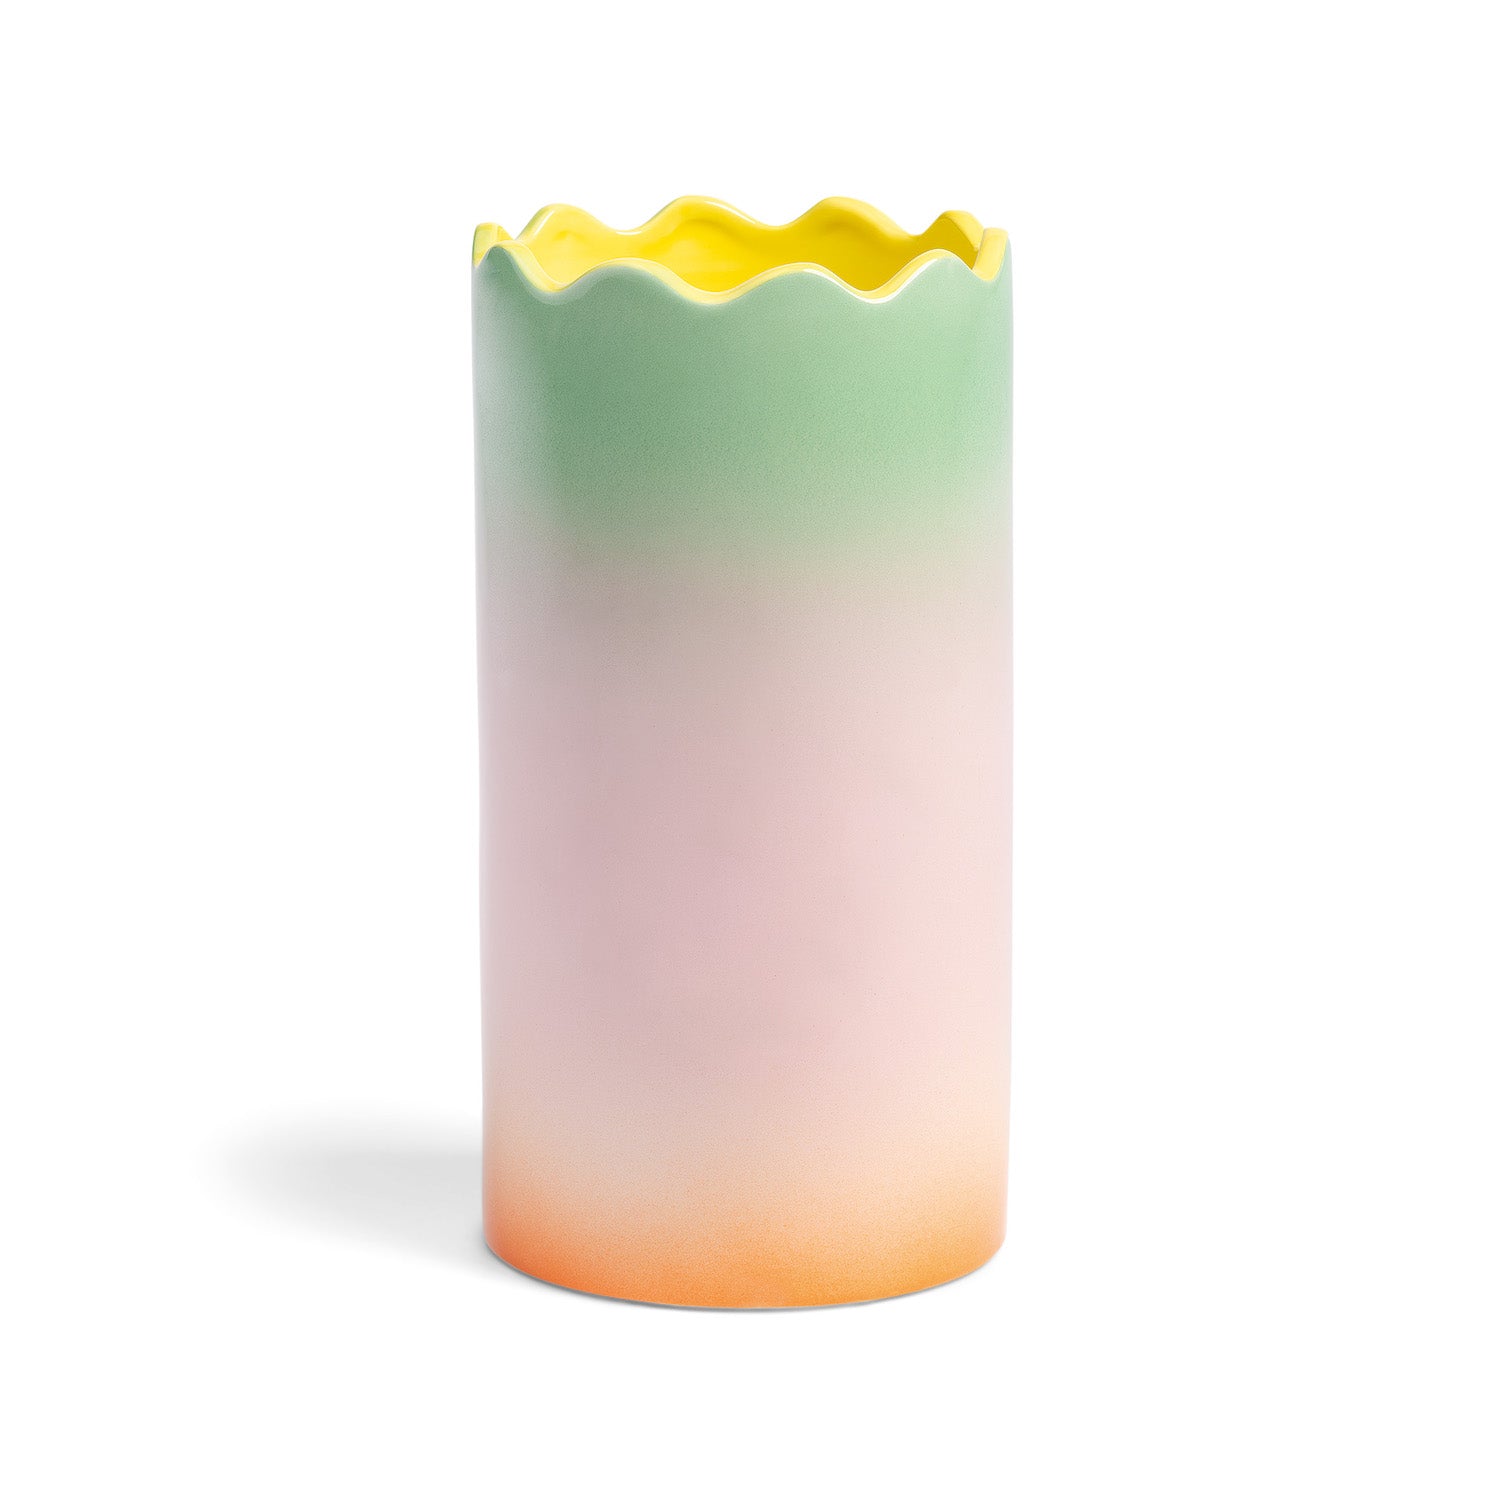 & Klevering – Fade Vase Large